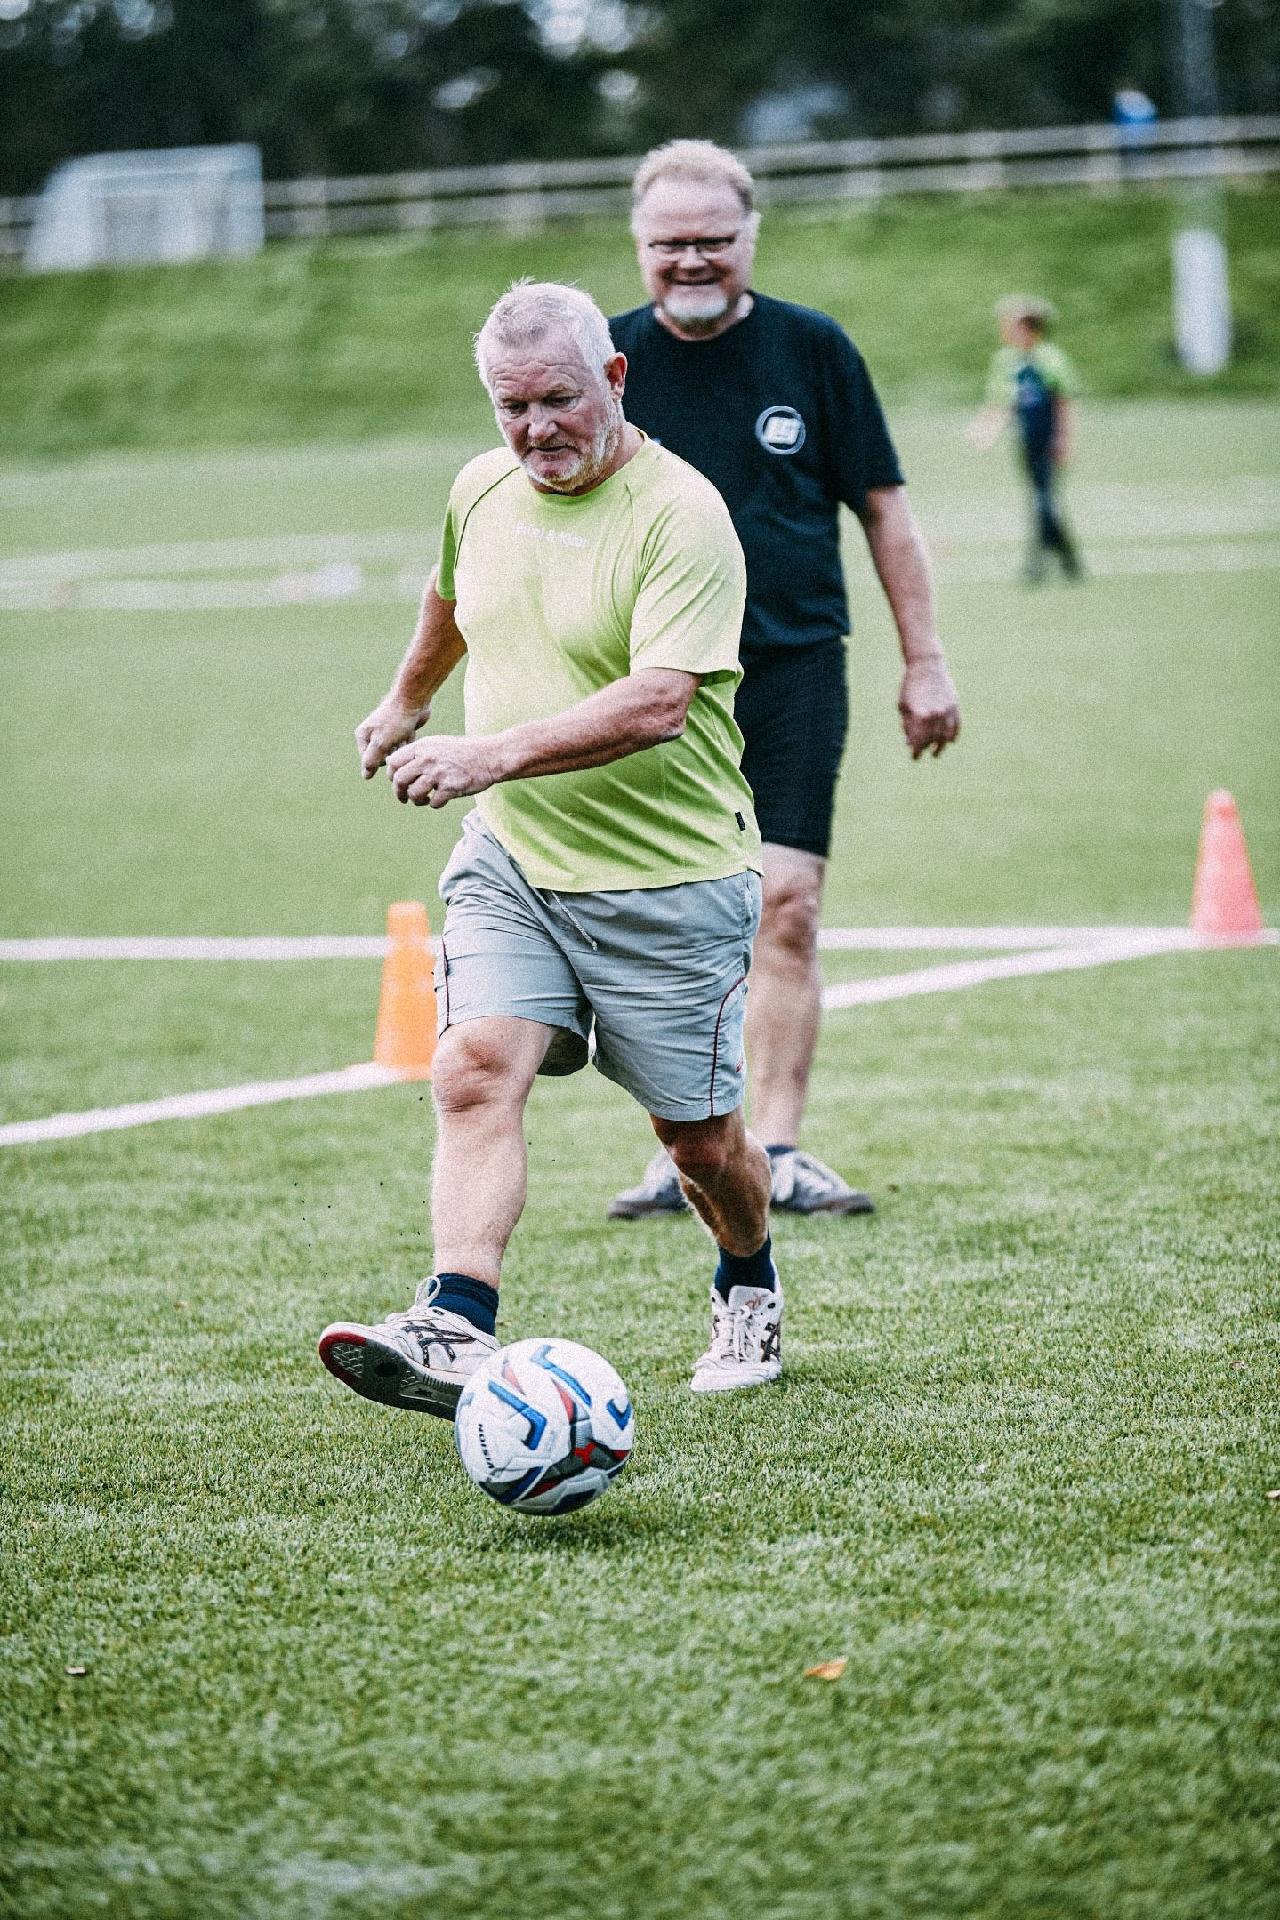 Jogar futebol melhora saúde cardiovascular e reduz gordura corporal -  28/01/2018 - UOL VivaBem